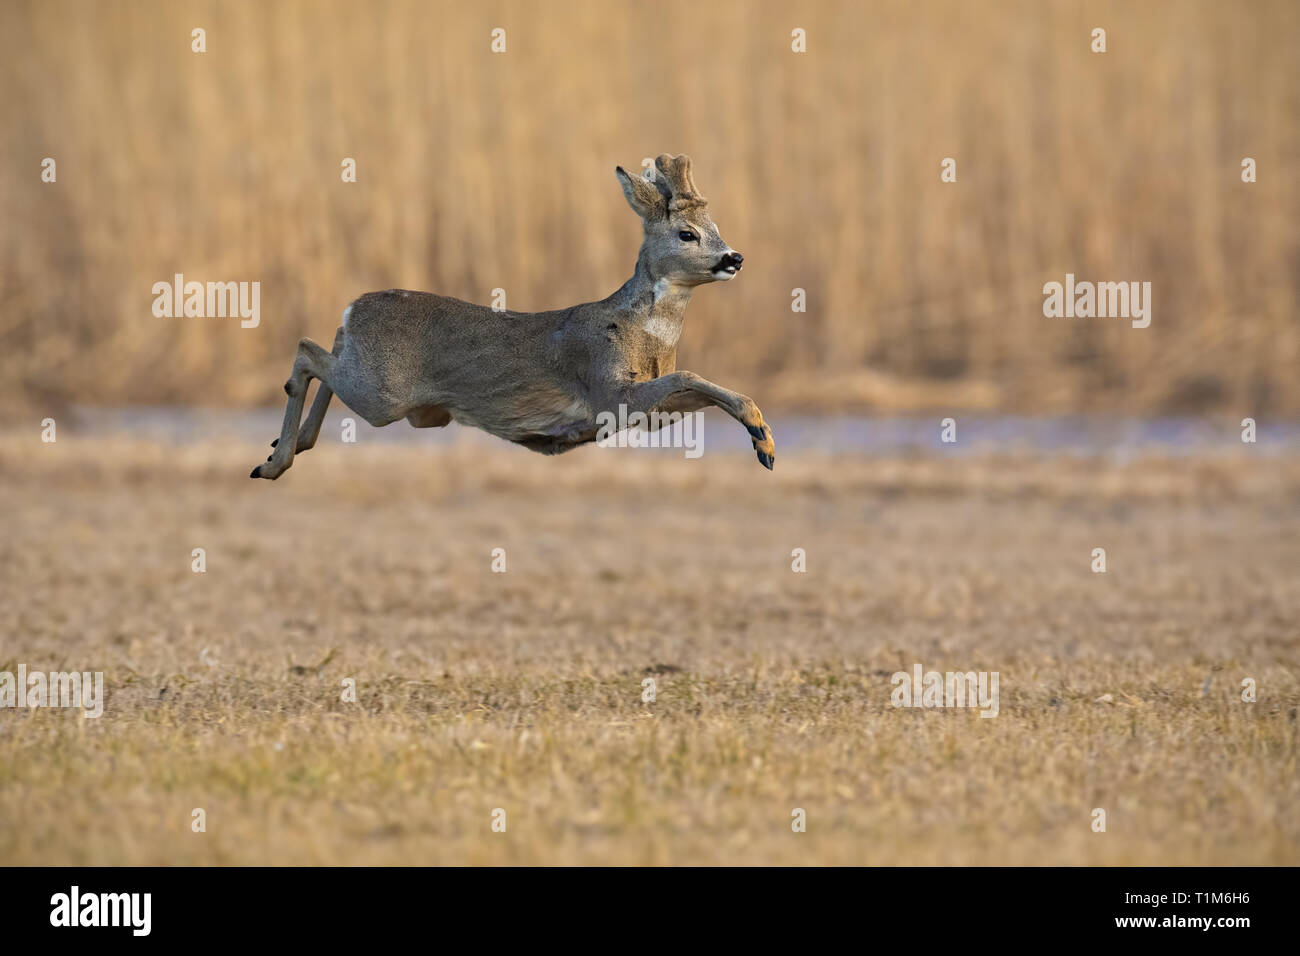 Esecuzione di Capriolo, Capreolus capreolus in inverno. Roebuck jumping midair. Azione scenario della fauna selvatica. Foto Stock